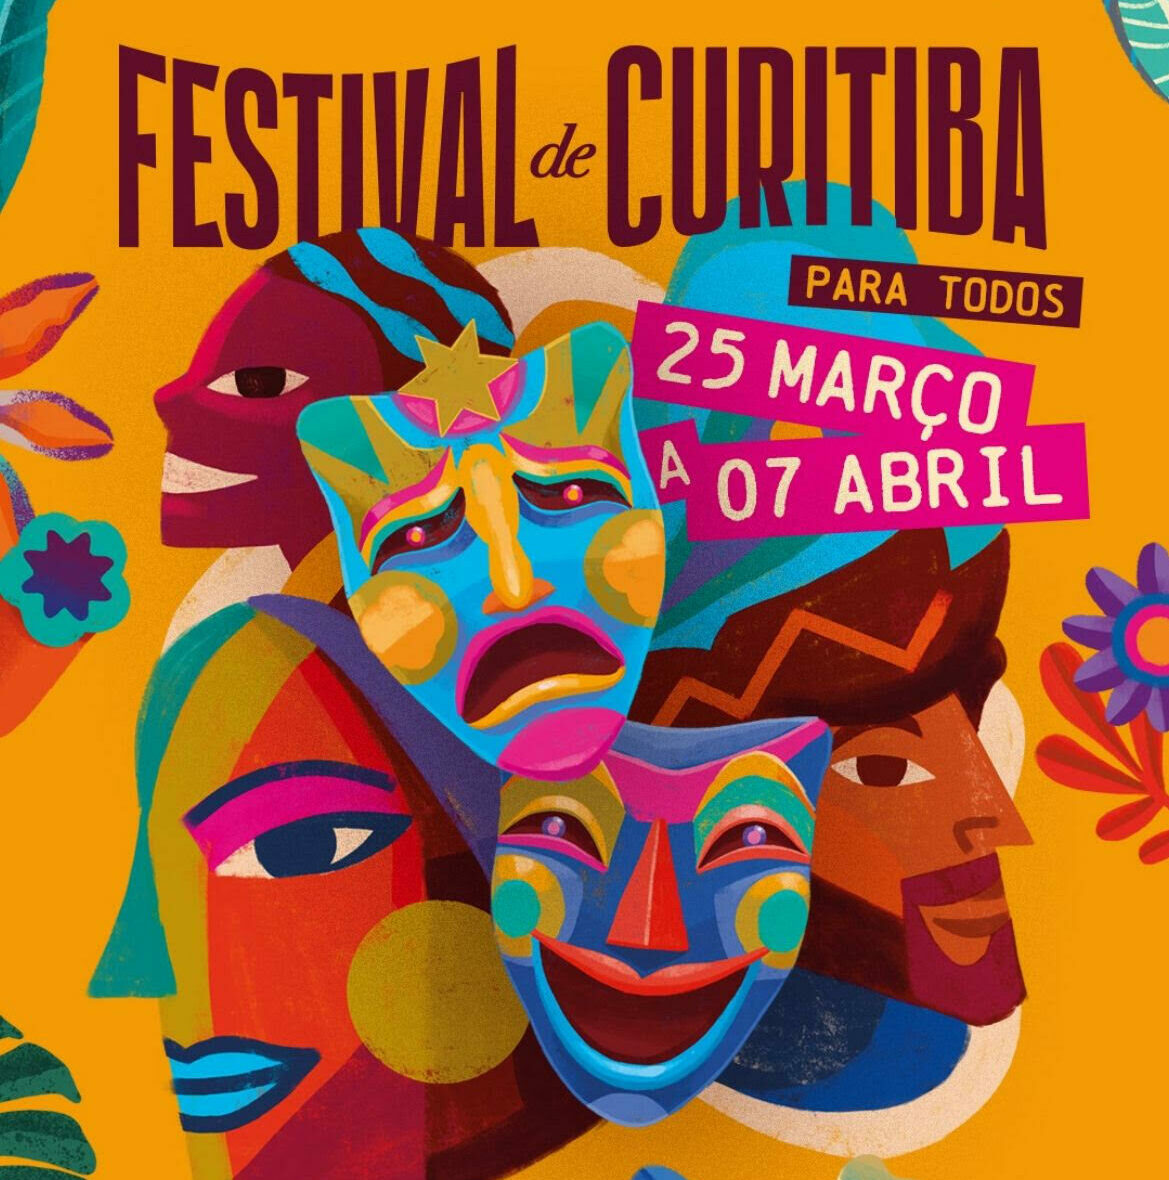 Festival de Teatro de Curitiba espera bater o recorde dos 200 mil ingressos vendidos até 7 de abril